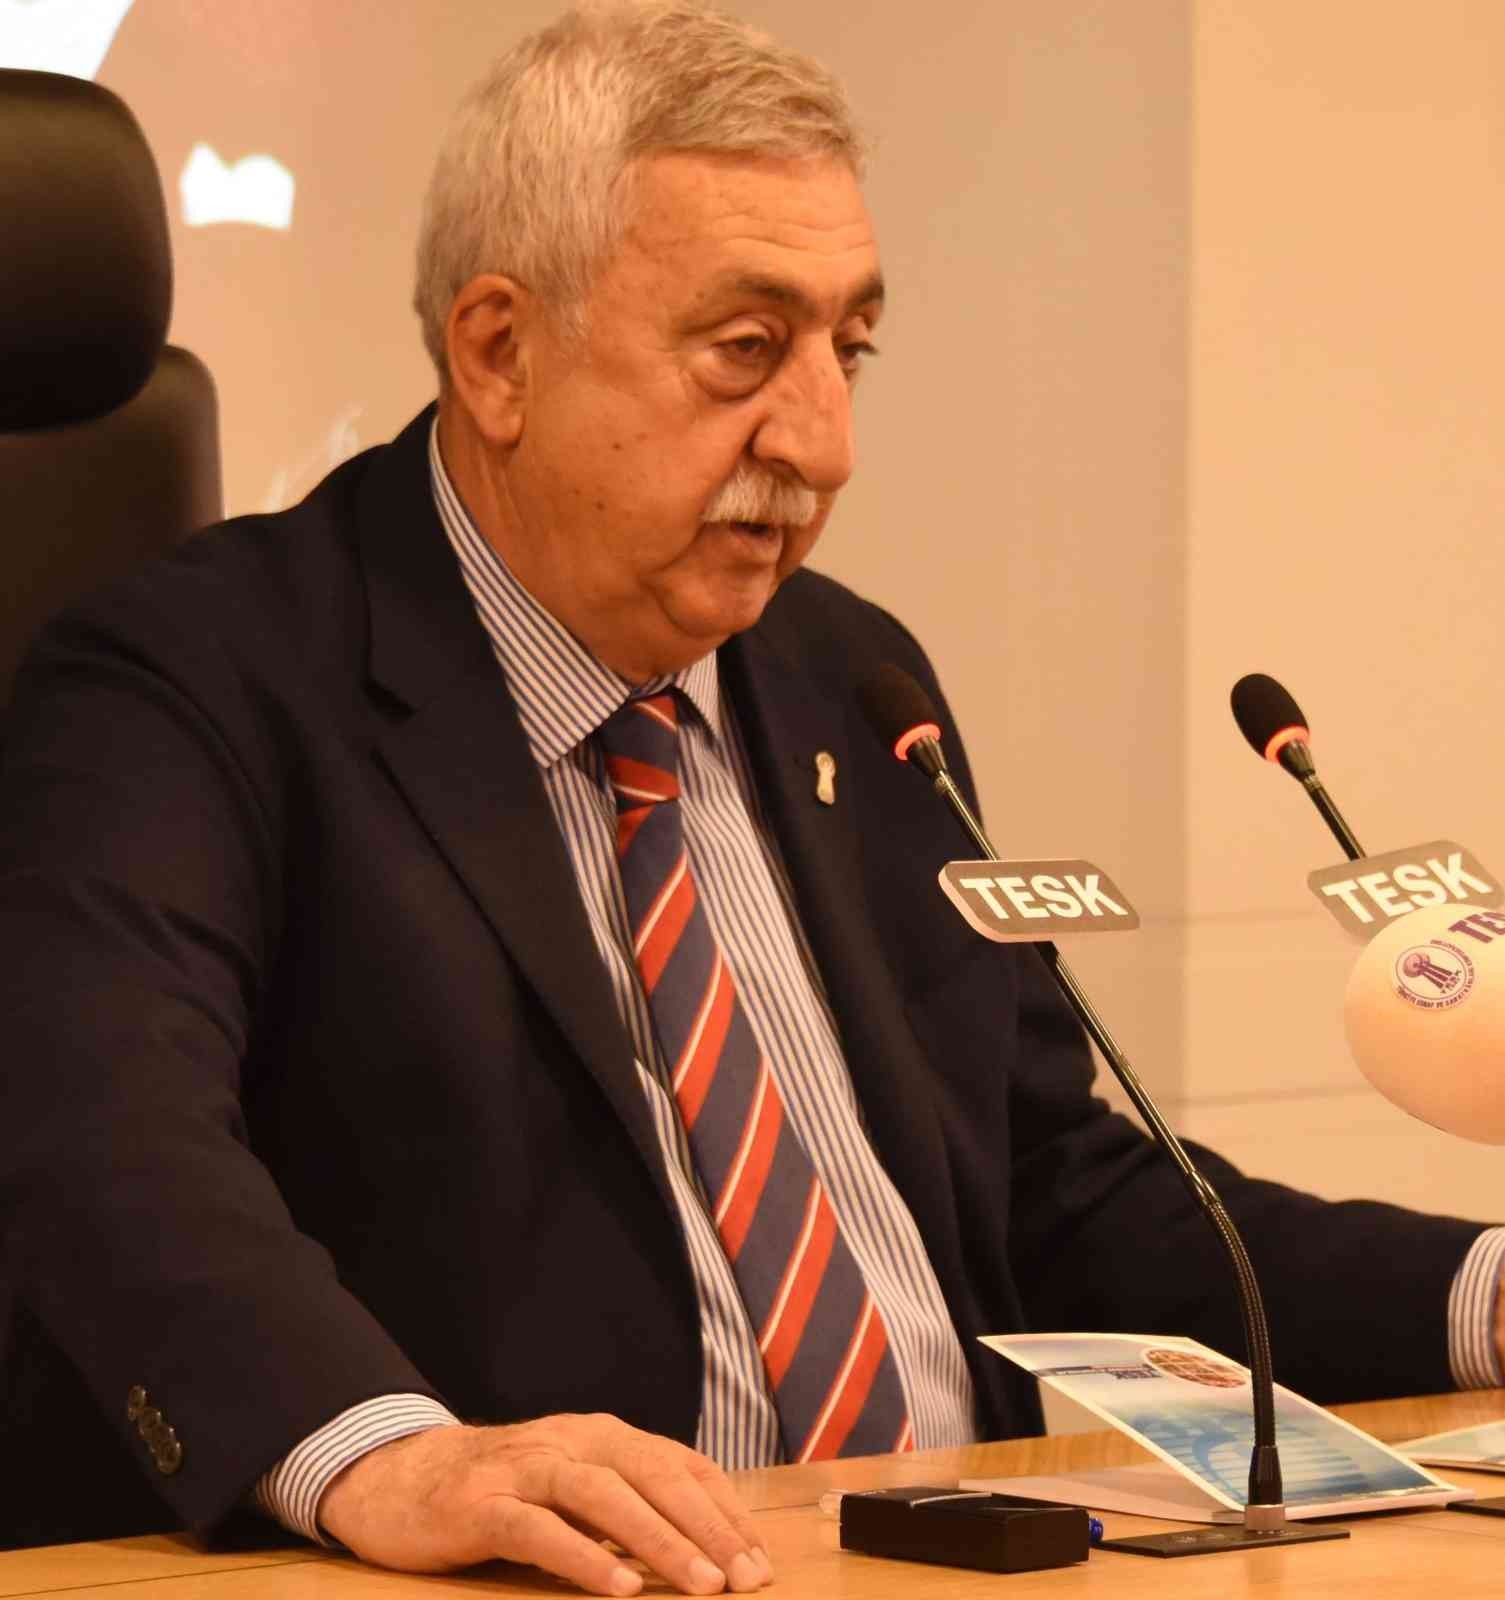 Tesk Genel Başkanı Palandöken: “Sosyal Güvenlik Düzenlemelerinde Esnaf Unutulmamalı”